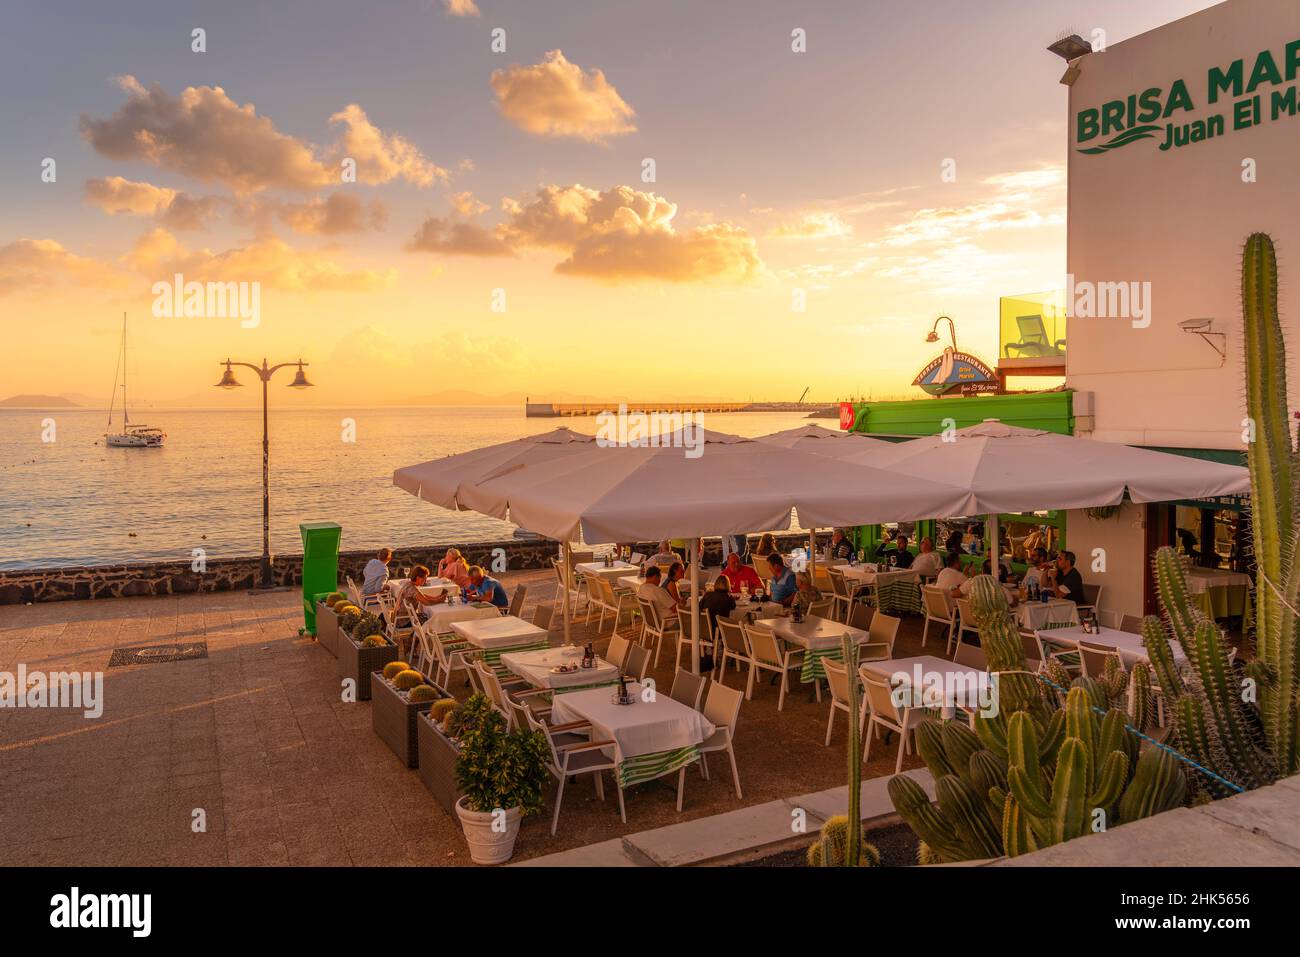 Vue sur le restaurant, le voilier sur la mer et Fuerteventura en arrière-plan au coucher du soleil, Playa Blanca, Lanzarote, îles Canaries, Espagne,Atlantique, Europe Banque D'Images